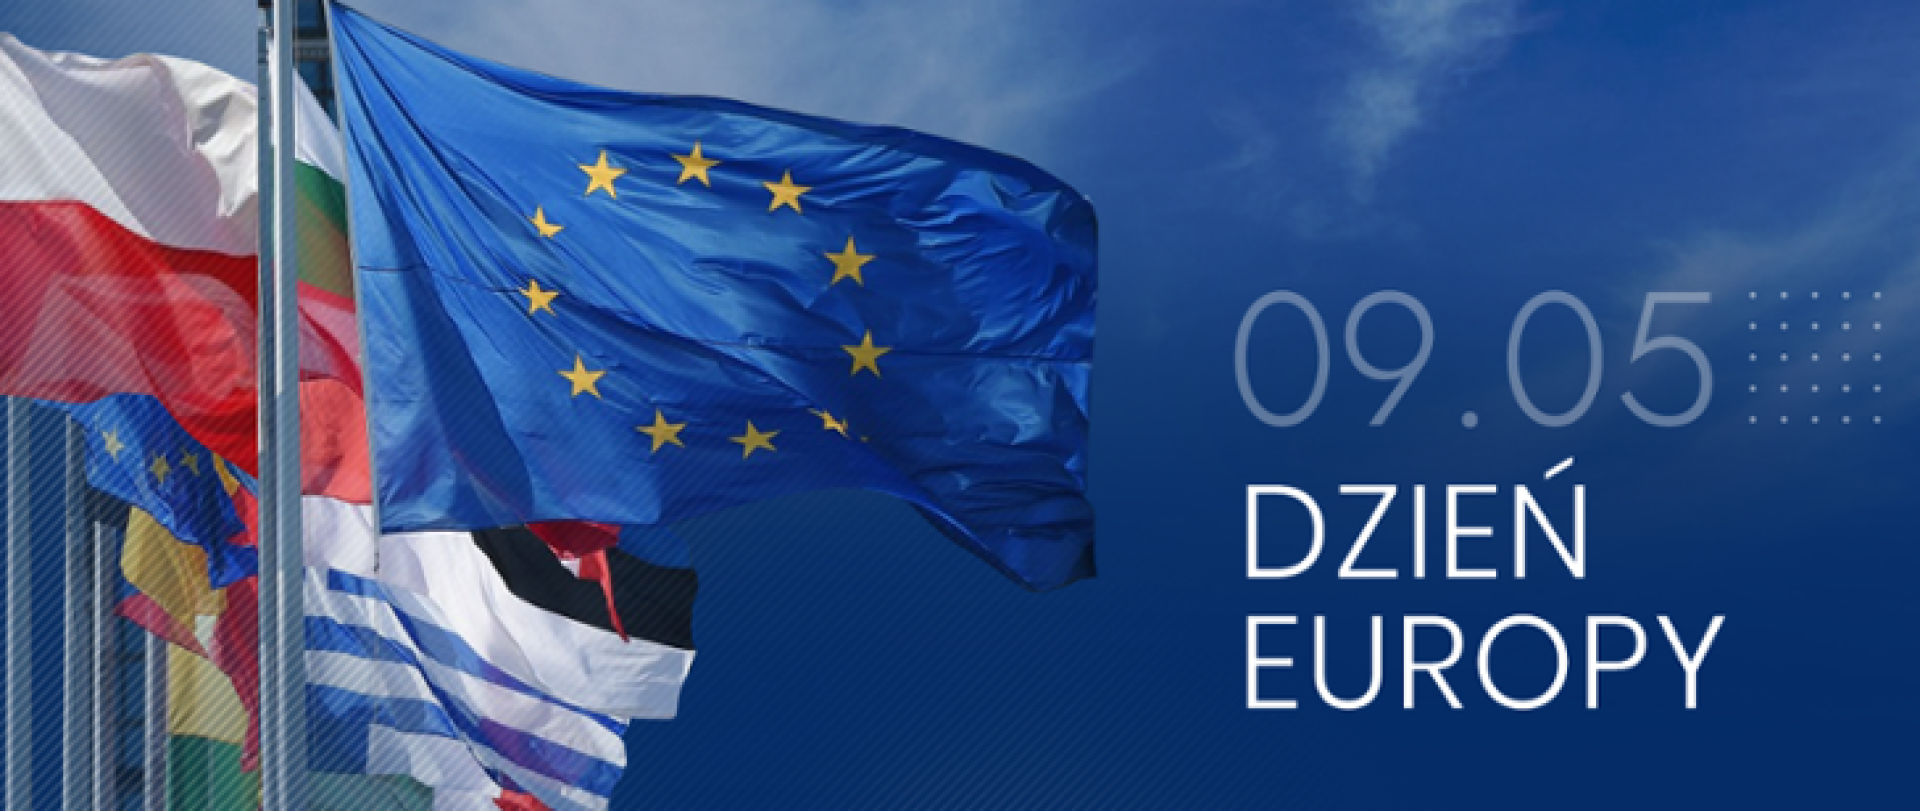 9 maja świętujemy Dzień Europy